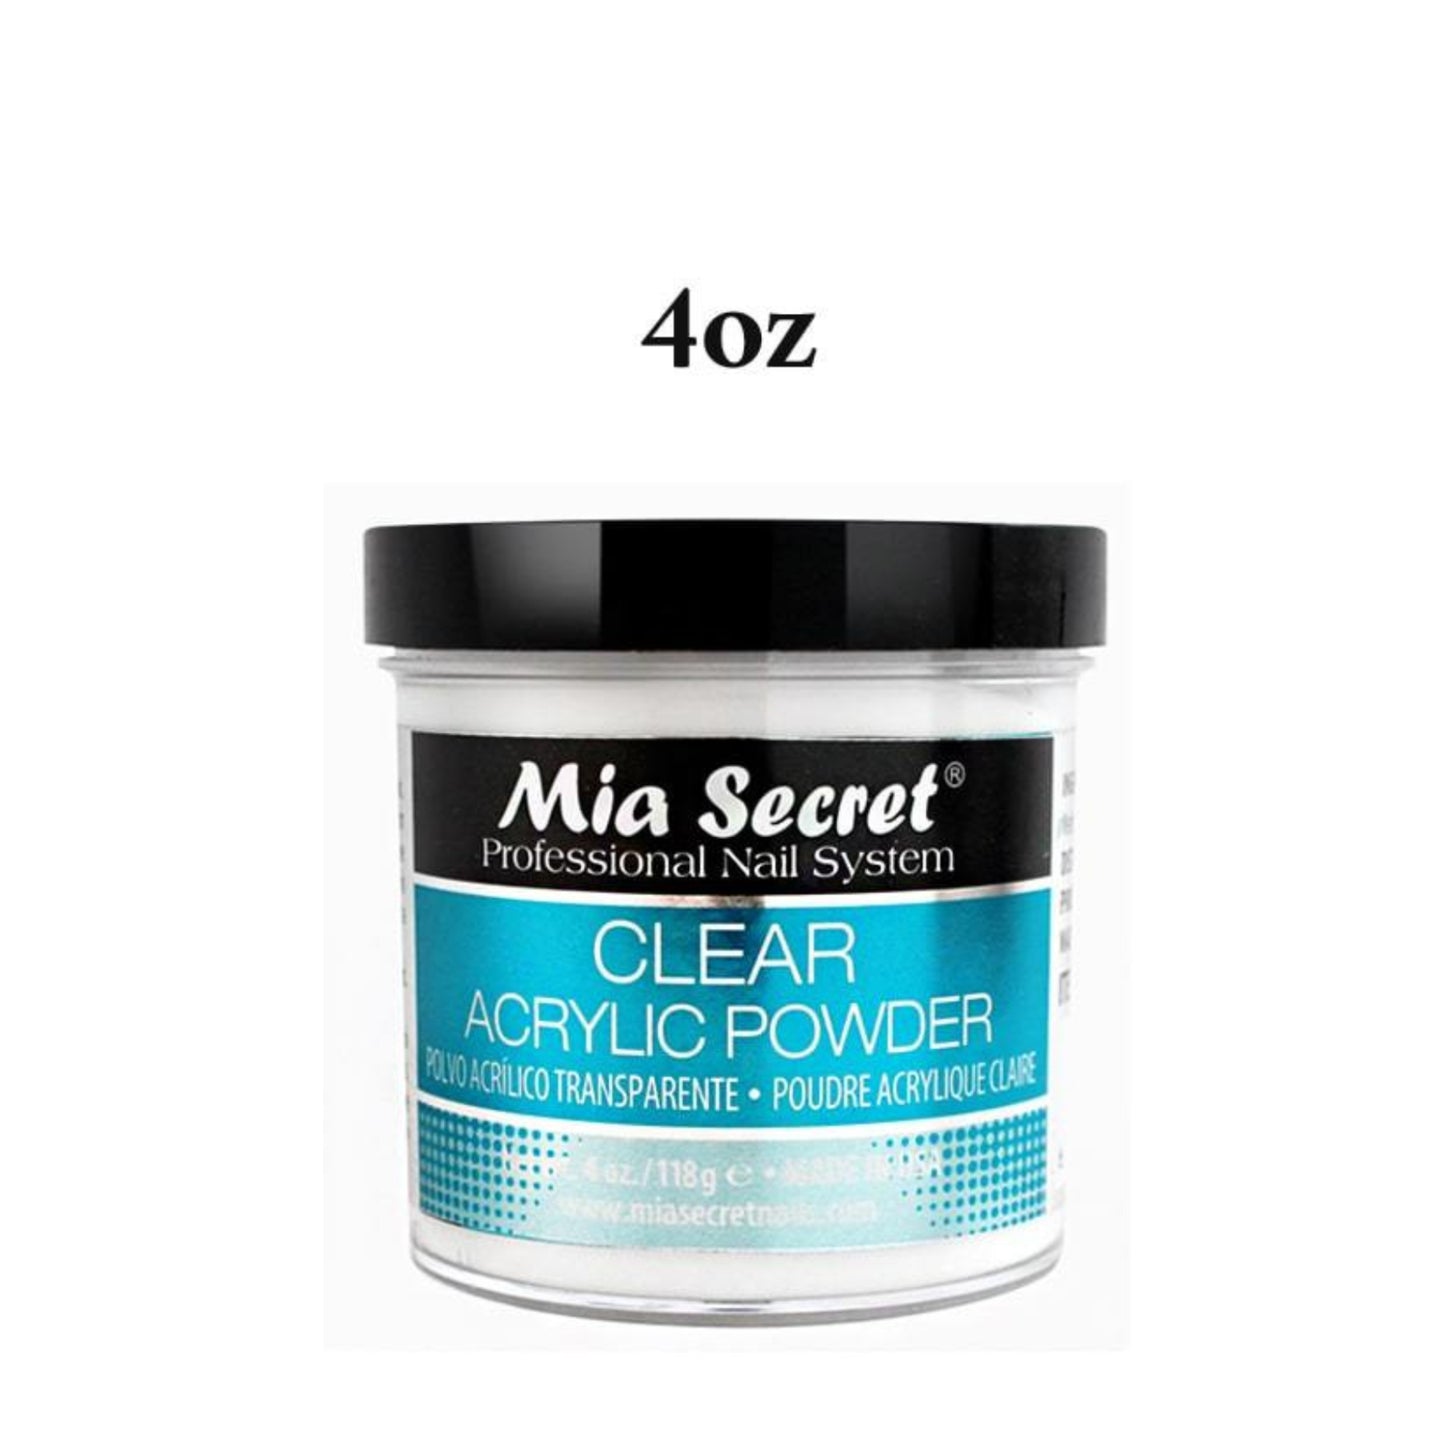 Mia Secret CLEAR Acrylic Powder